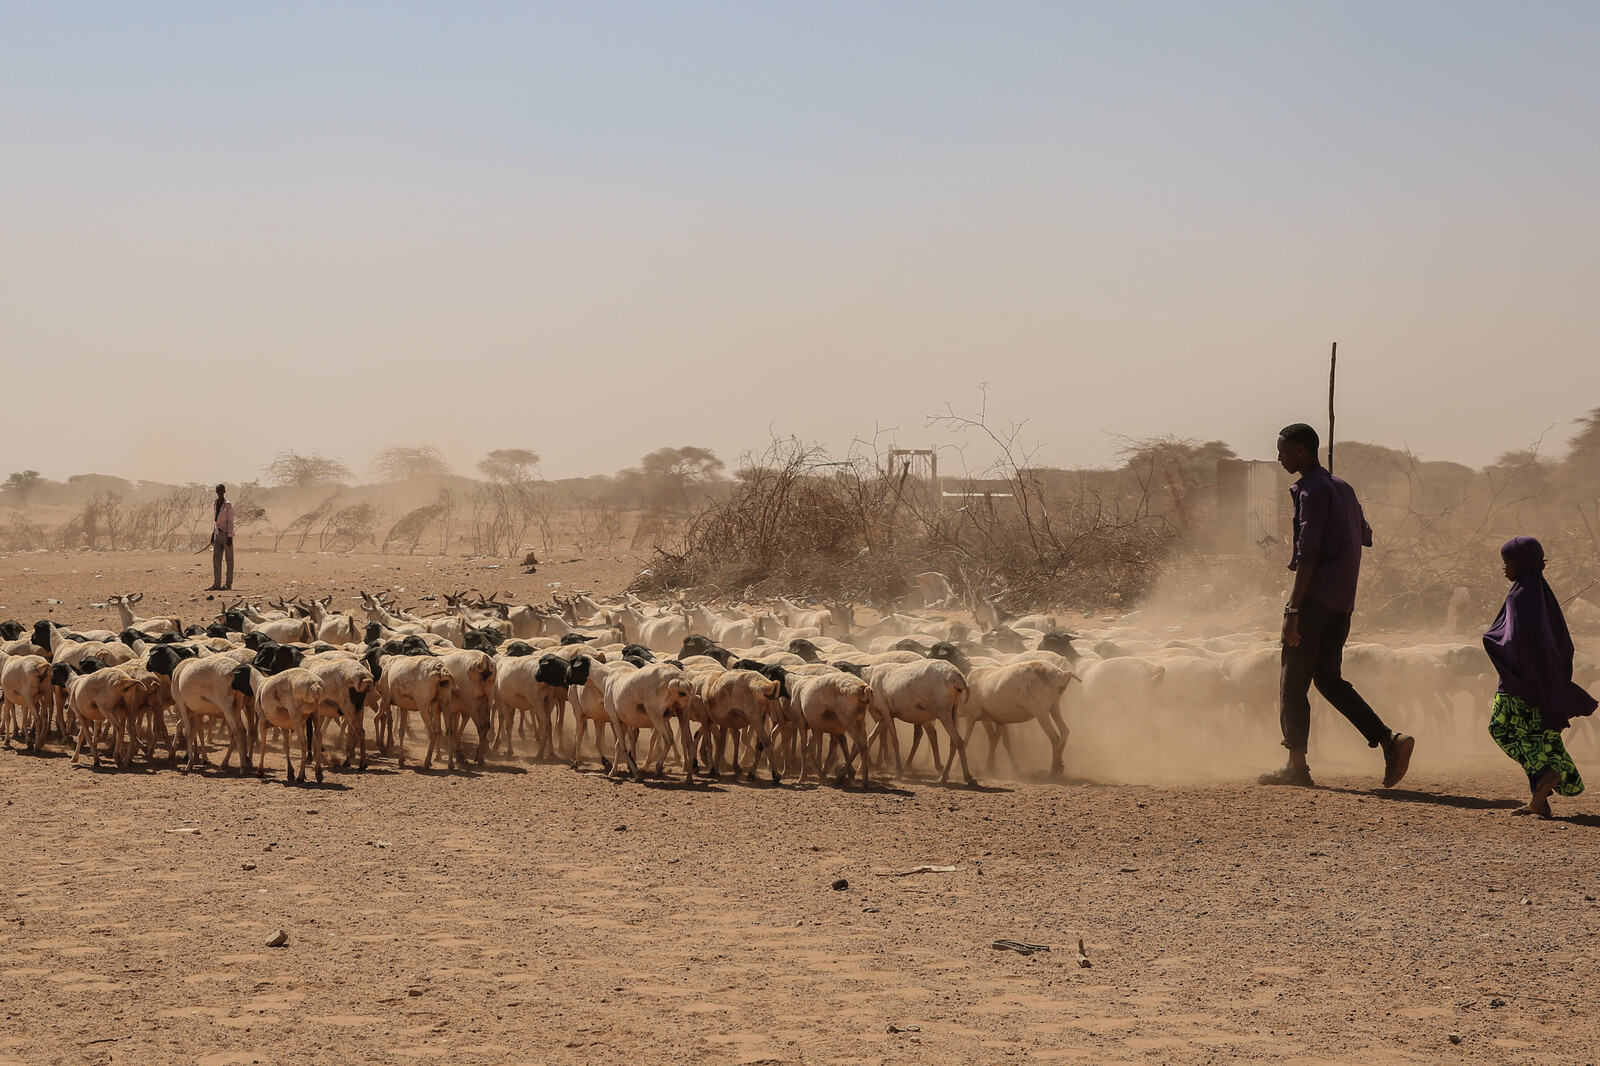 Hirten in Somalia versuchen, ihre Viehherde zu versorgen.